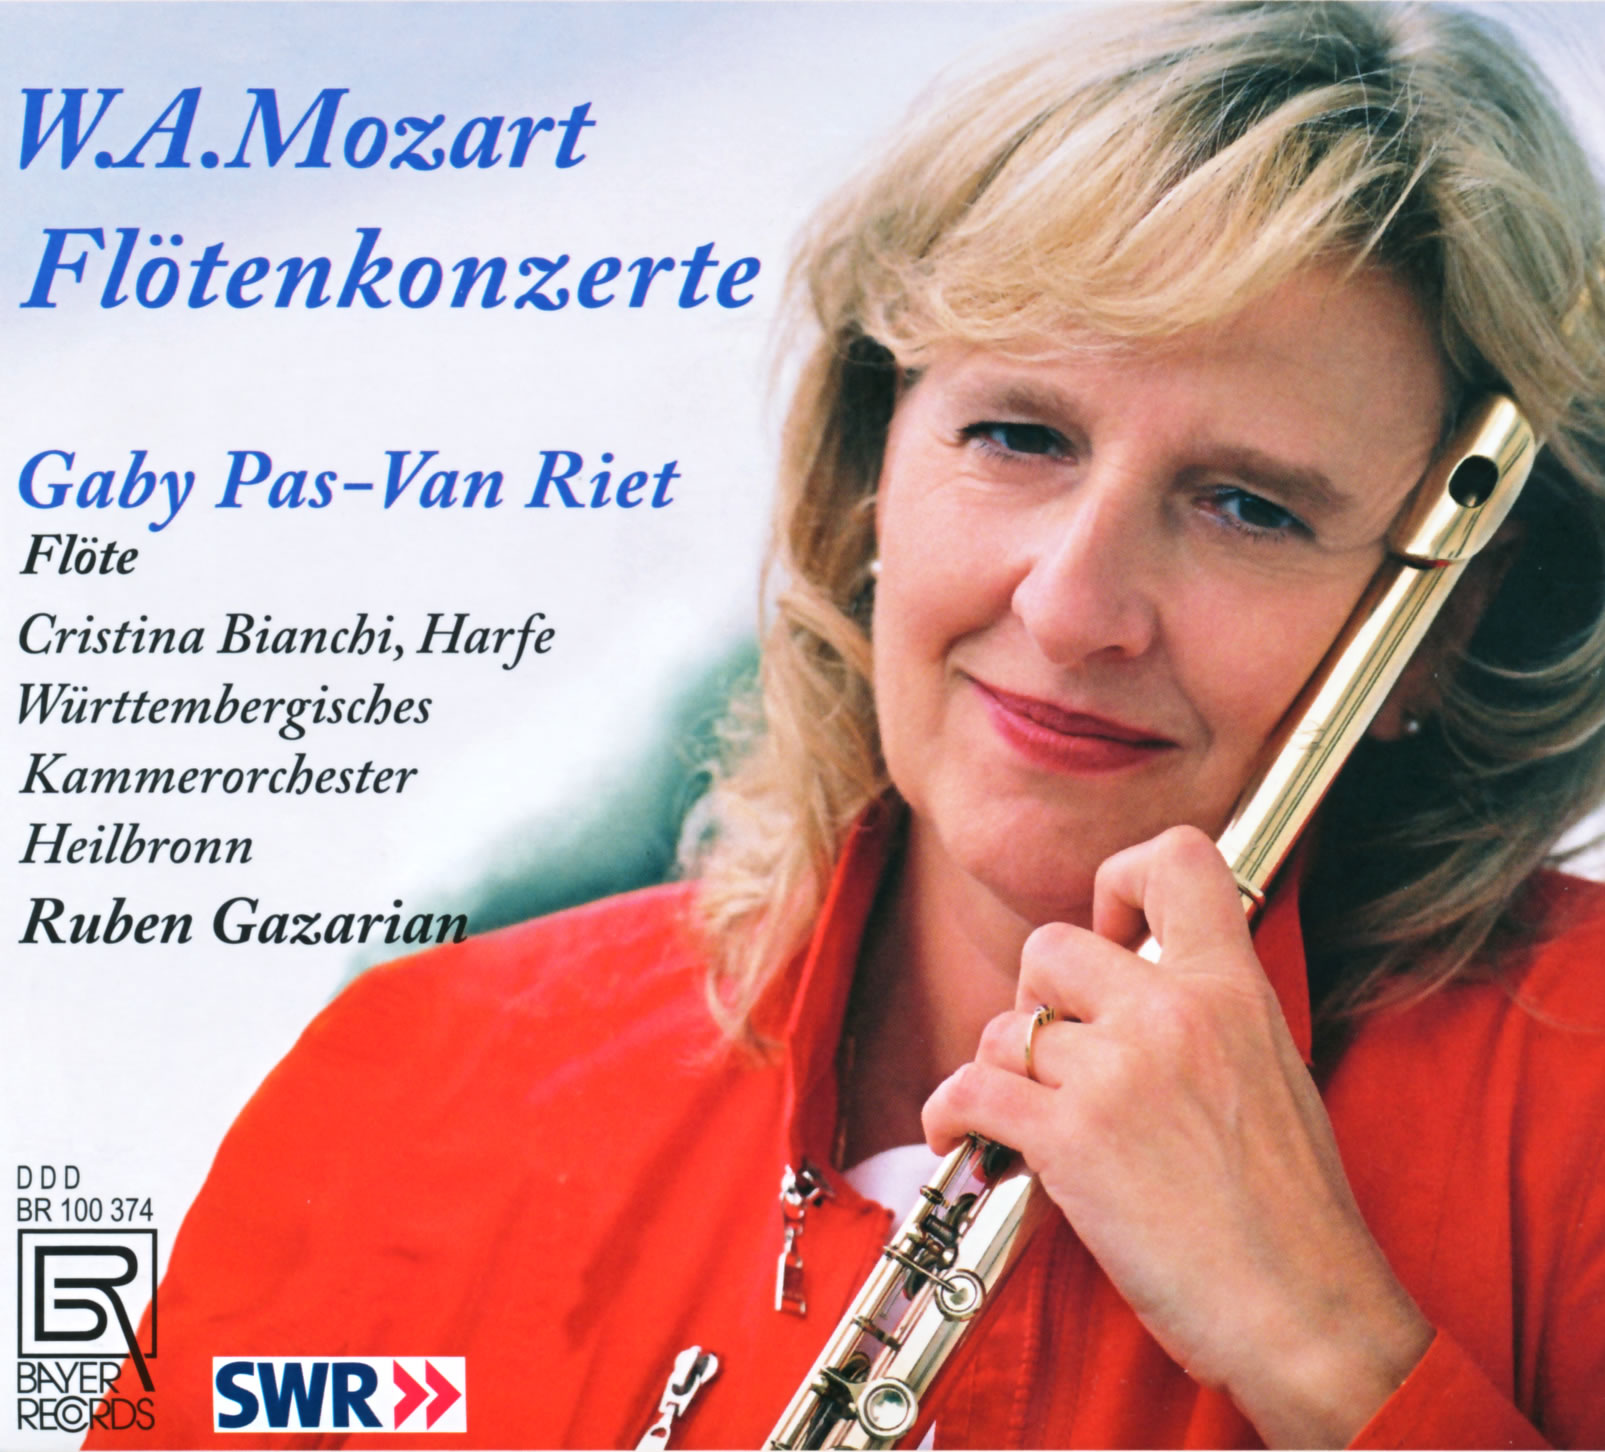 Gaby Pas-Van Riet spielt Mozart